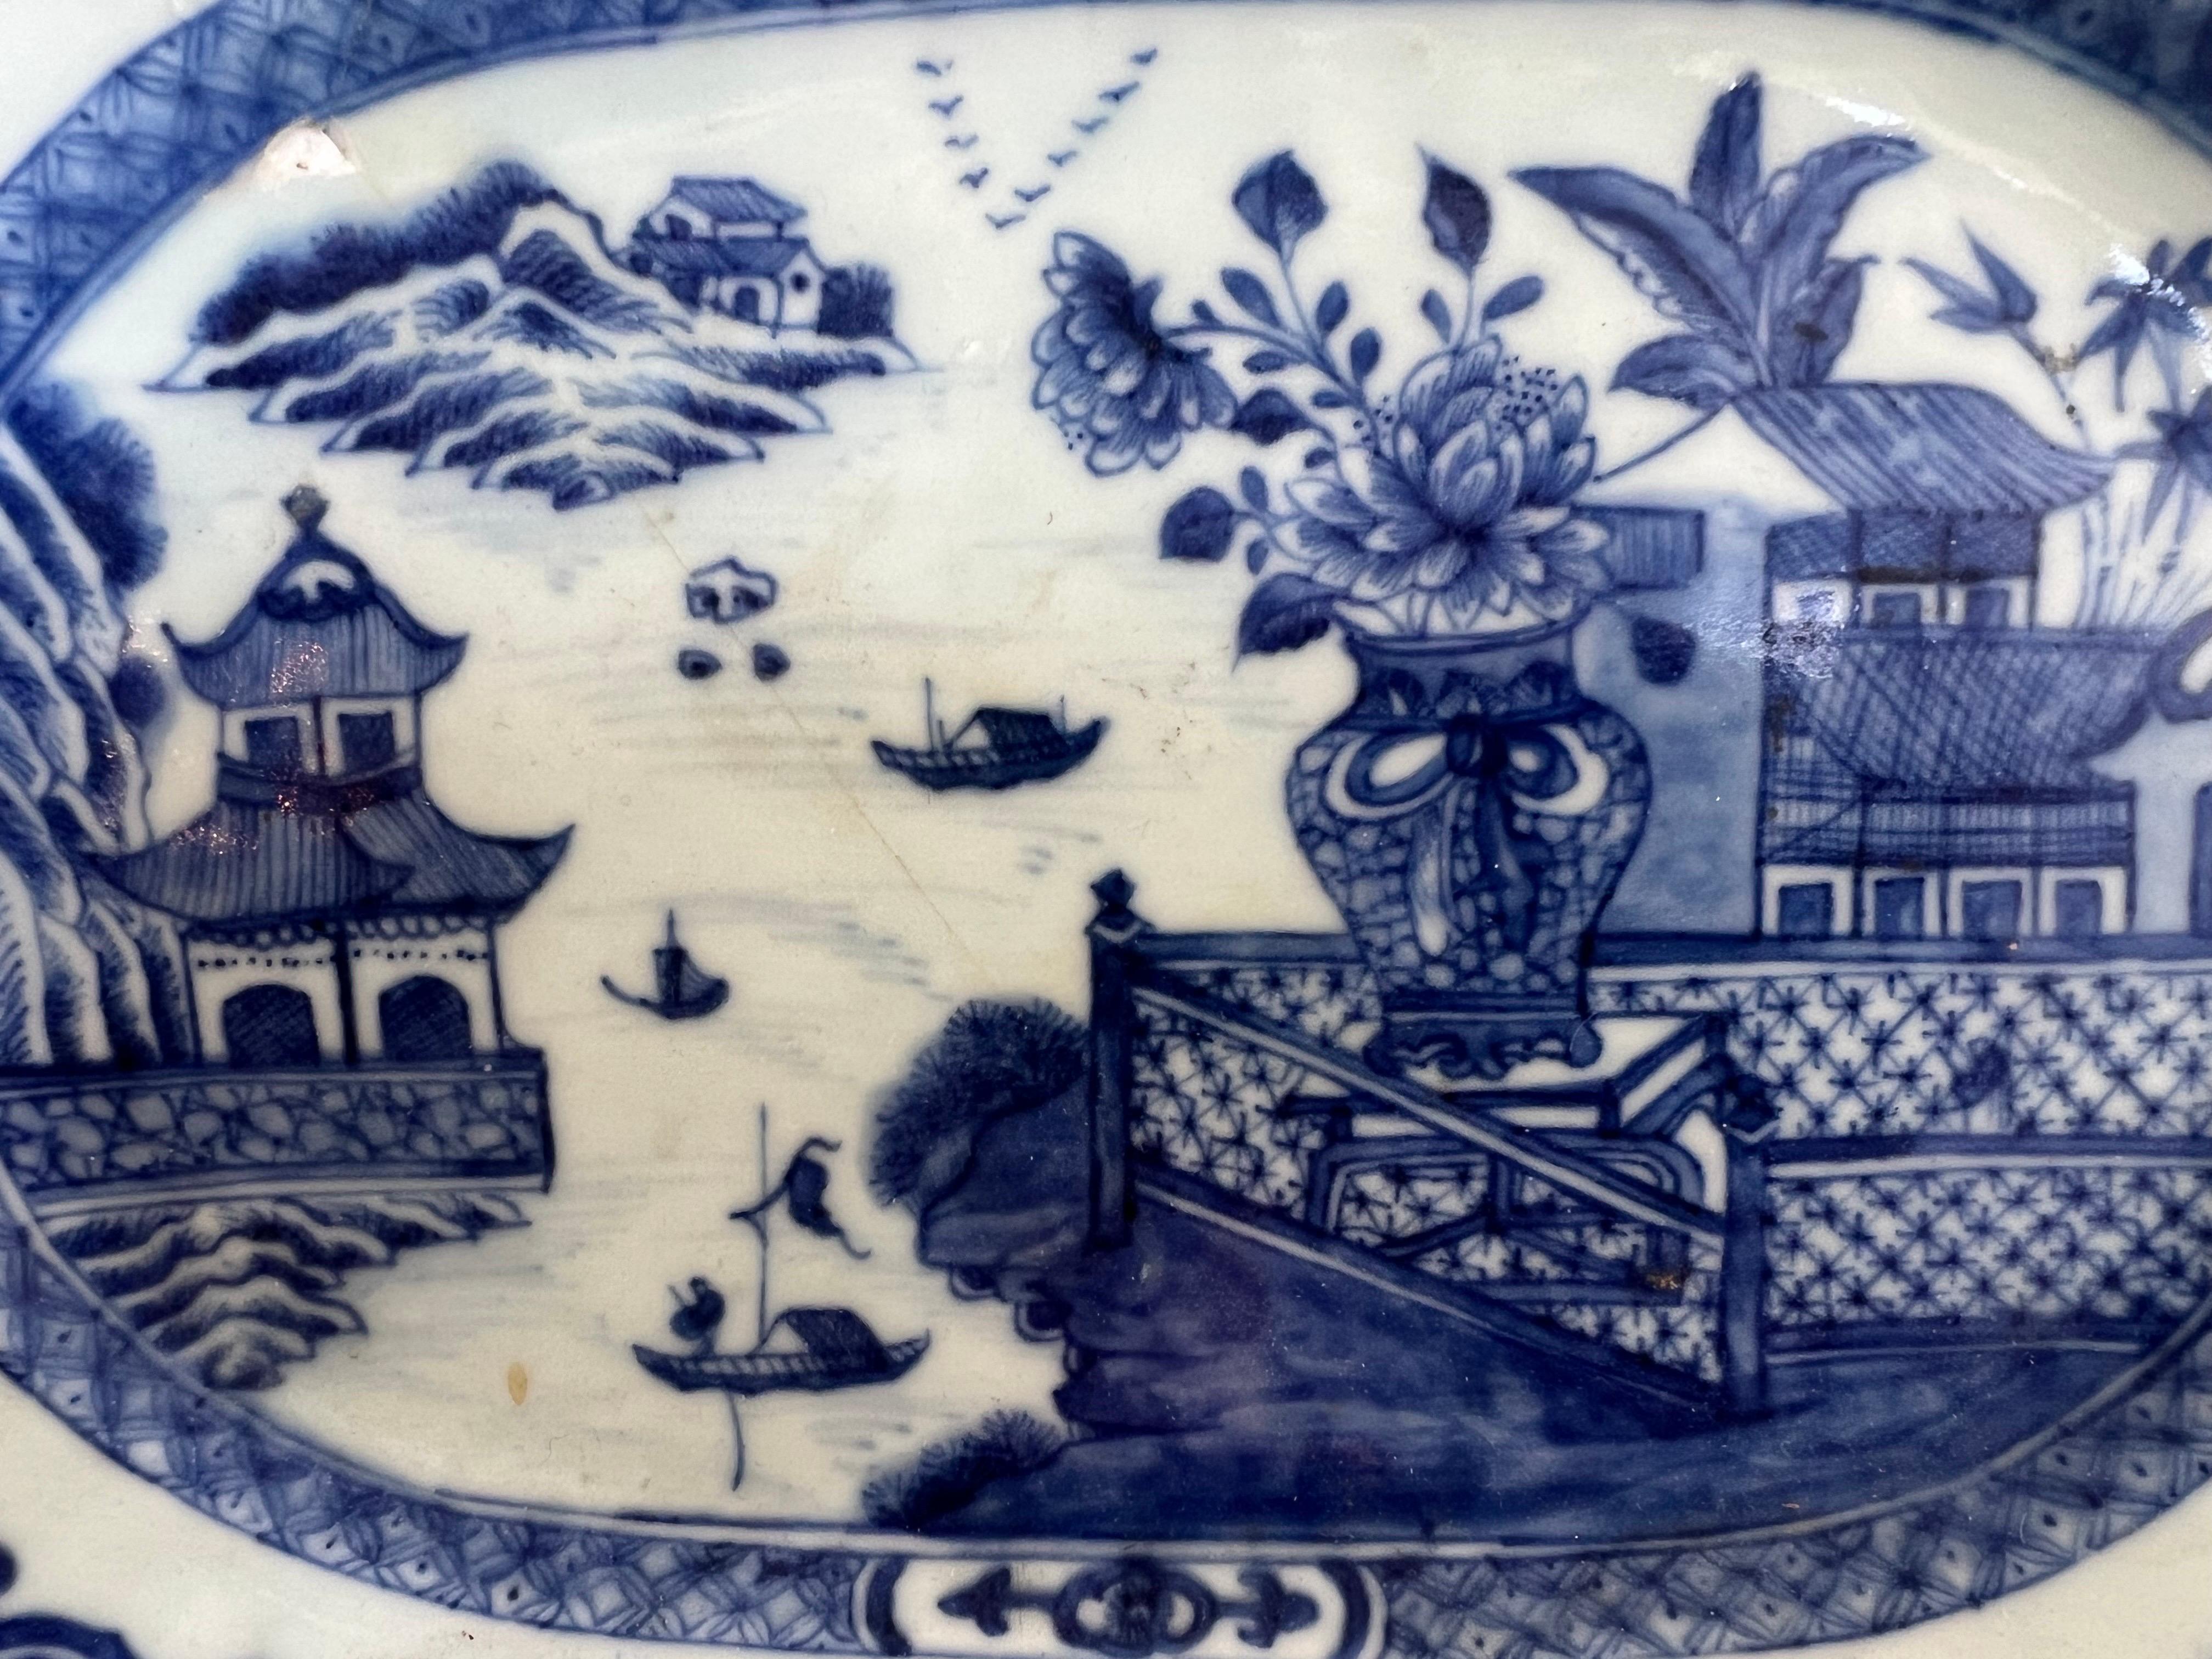 Assiette octogonale d'exportation chinoise du XVIIIe siècle présentant un captivant motif bleu et blanc.  Les scènes complexes représentent des pagodes, des fleurs, des scènes de la vie quotidienne, des lacs, des bateaux, mettant en valeur l'art de